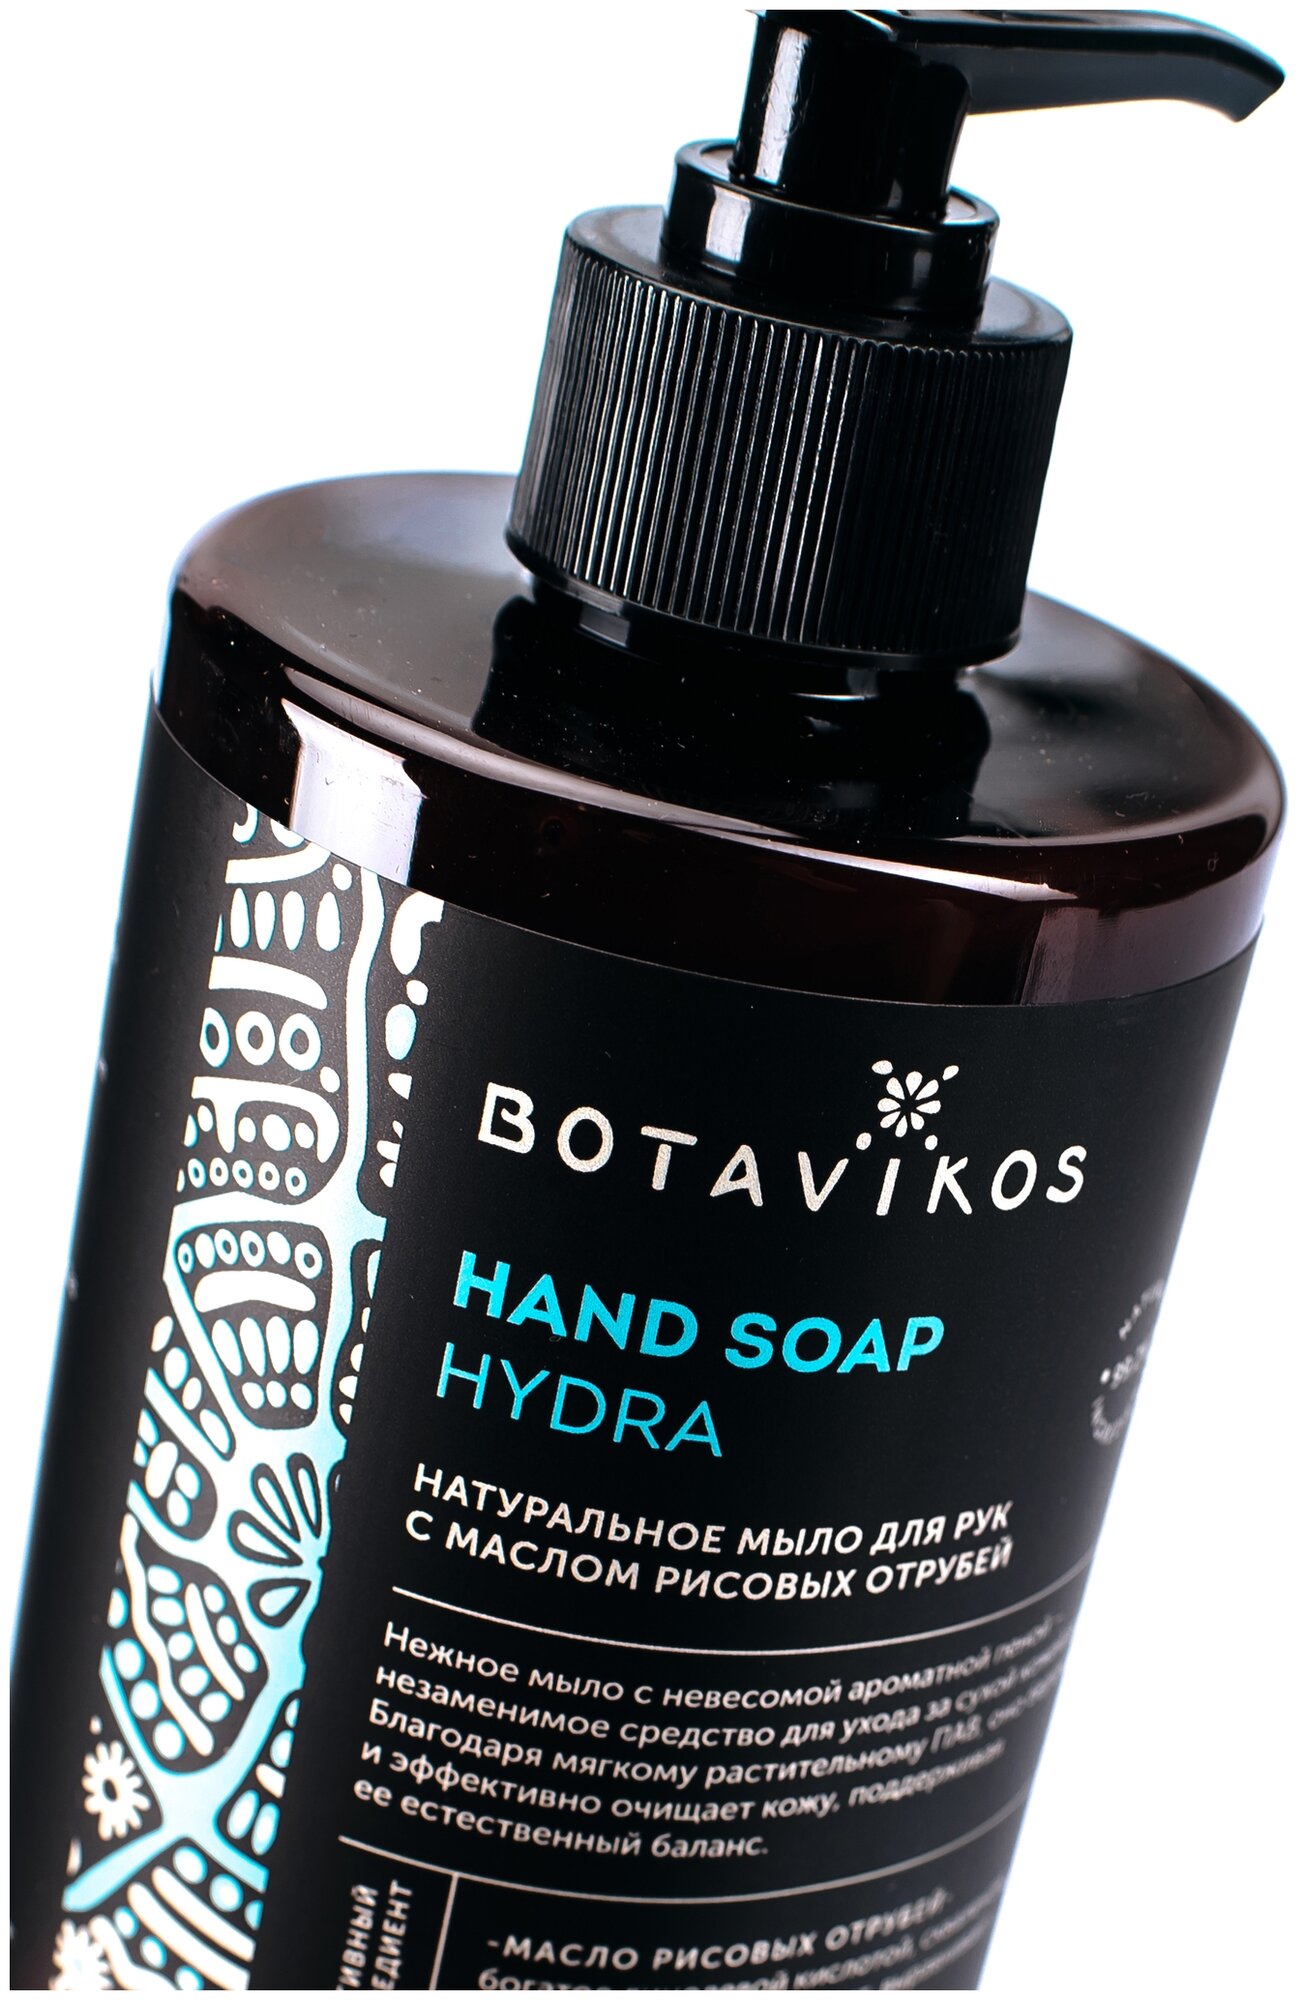 Мыло для рук жидкое Botavikos HYDRA 460 мл - фото №3